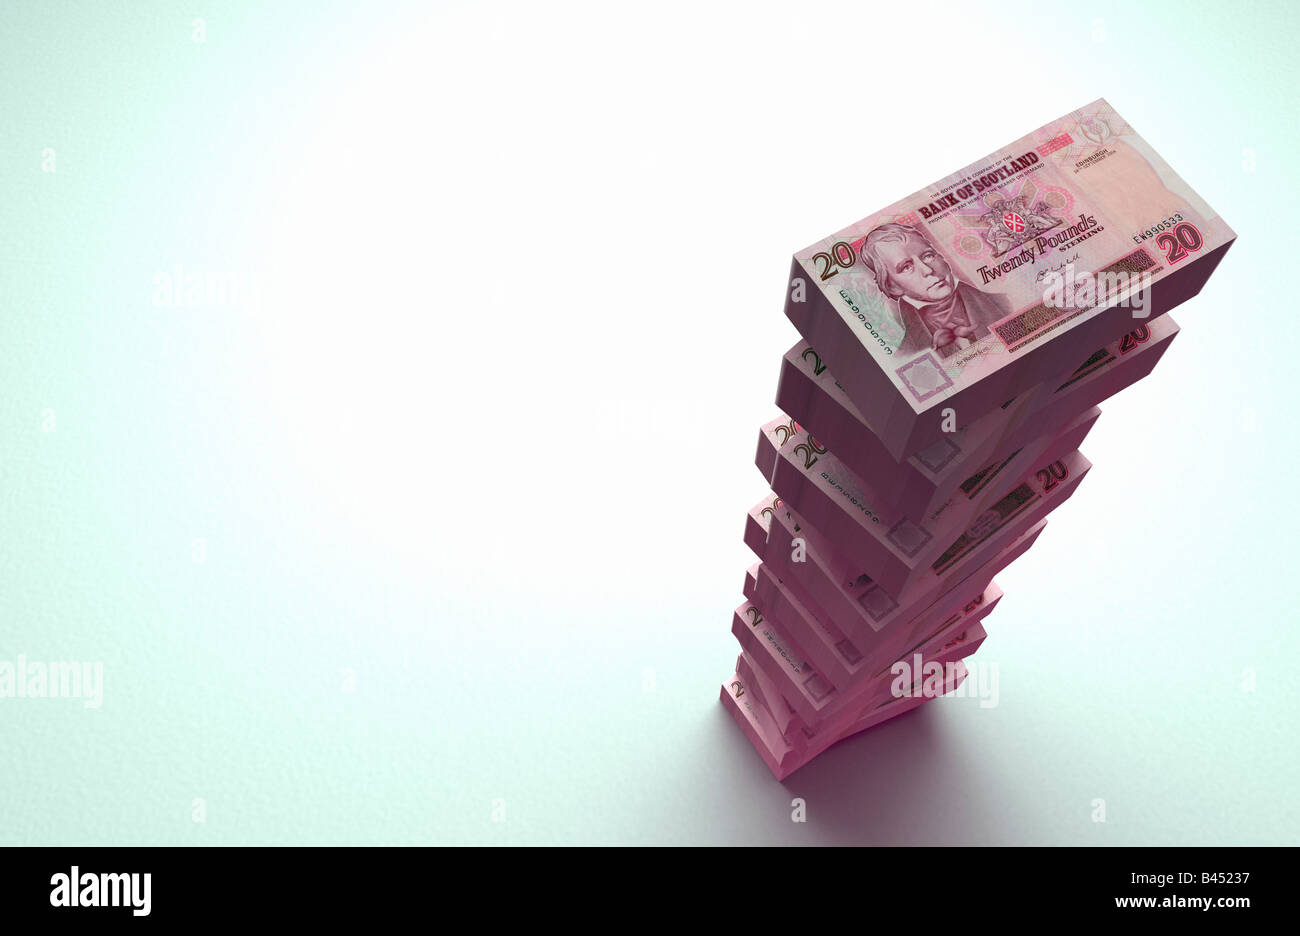 Large stack of £20 pound Scottish bank notes on plain background. Stock Photo